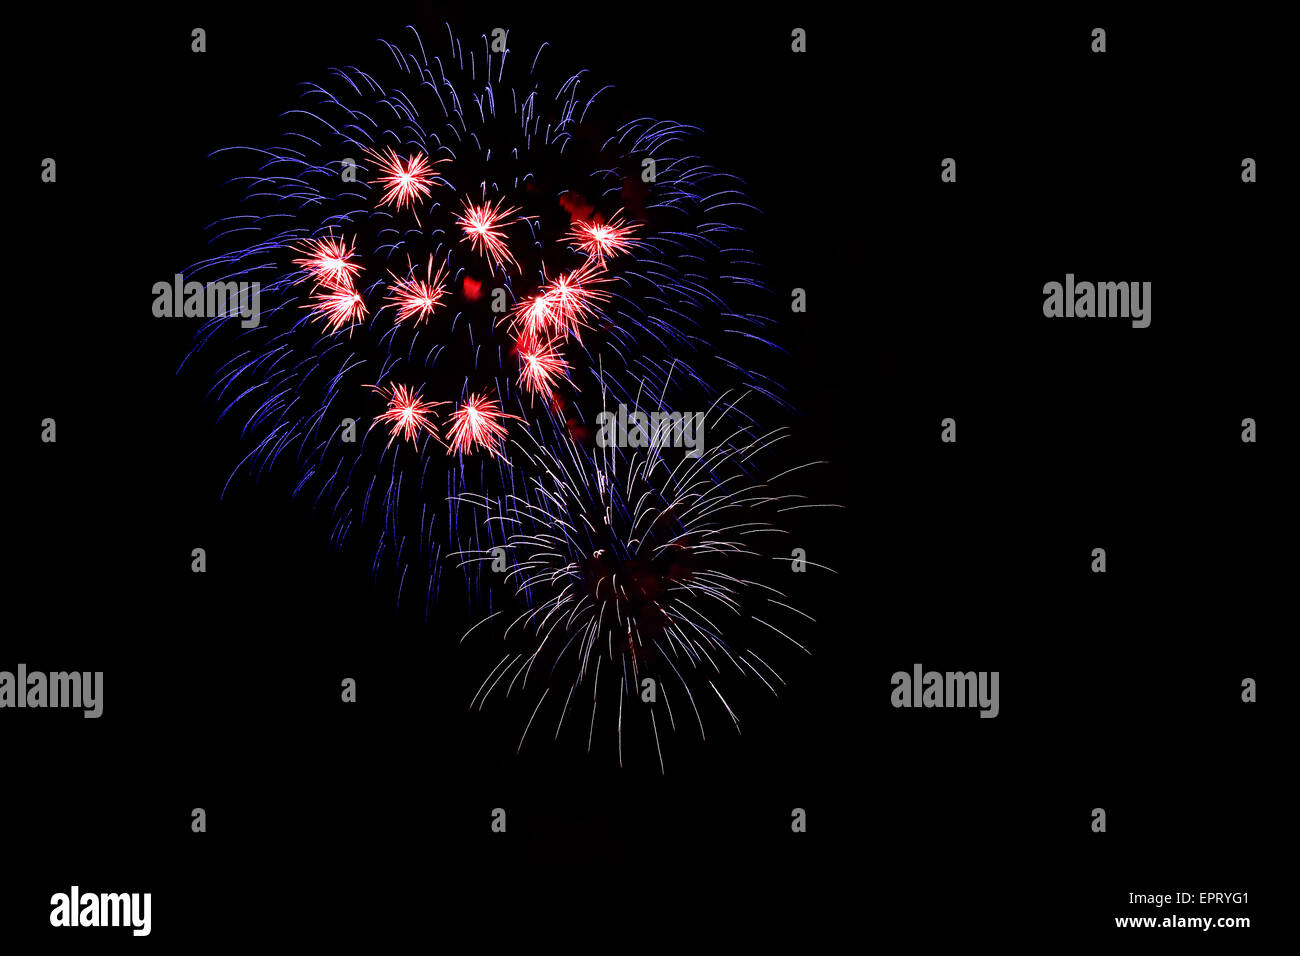 Feuerwerk in roten, blauen und weißen Farben auf dunklem Hintergrund, großes Symbol für die Nationalfarben der USA und Frankreich. Stockfoto